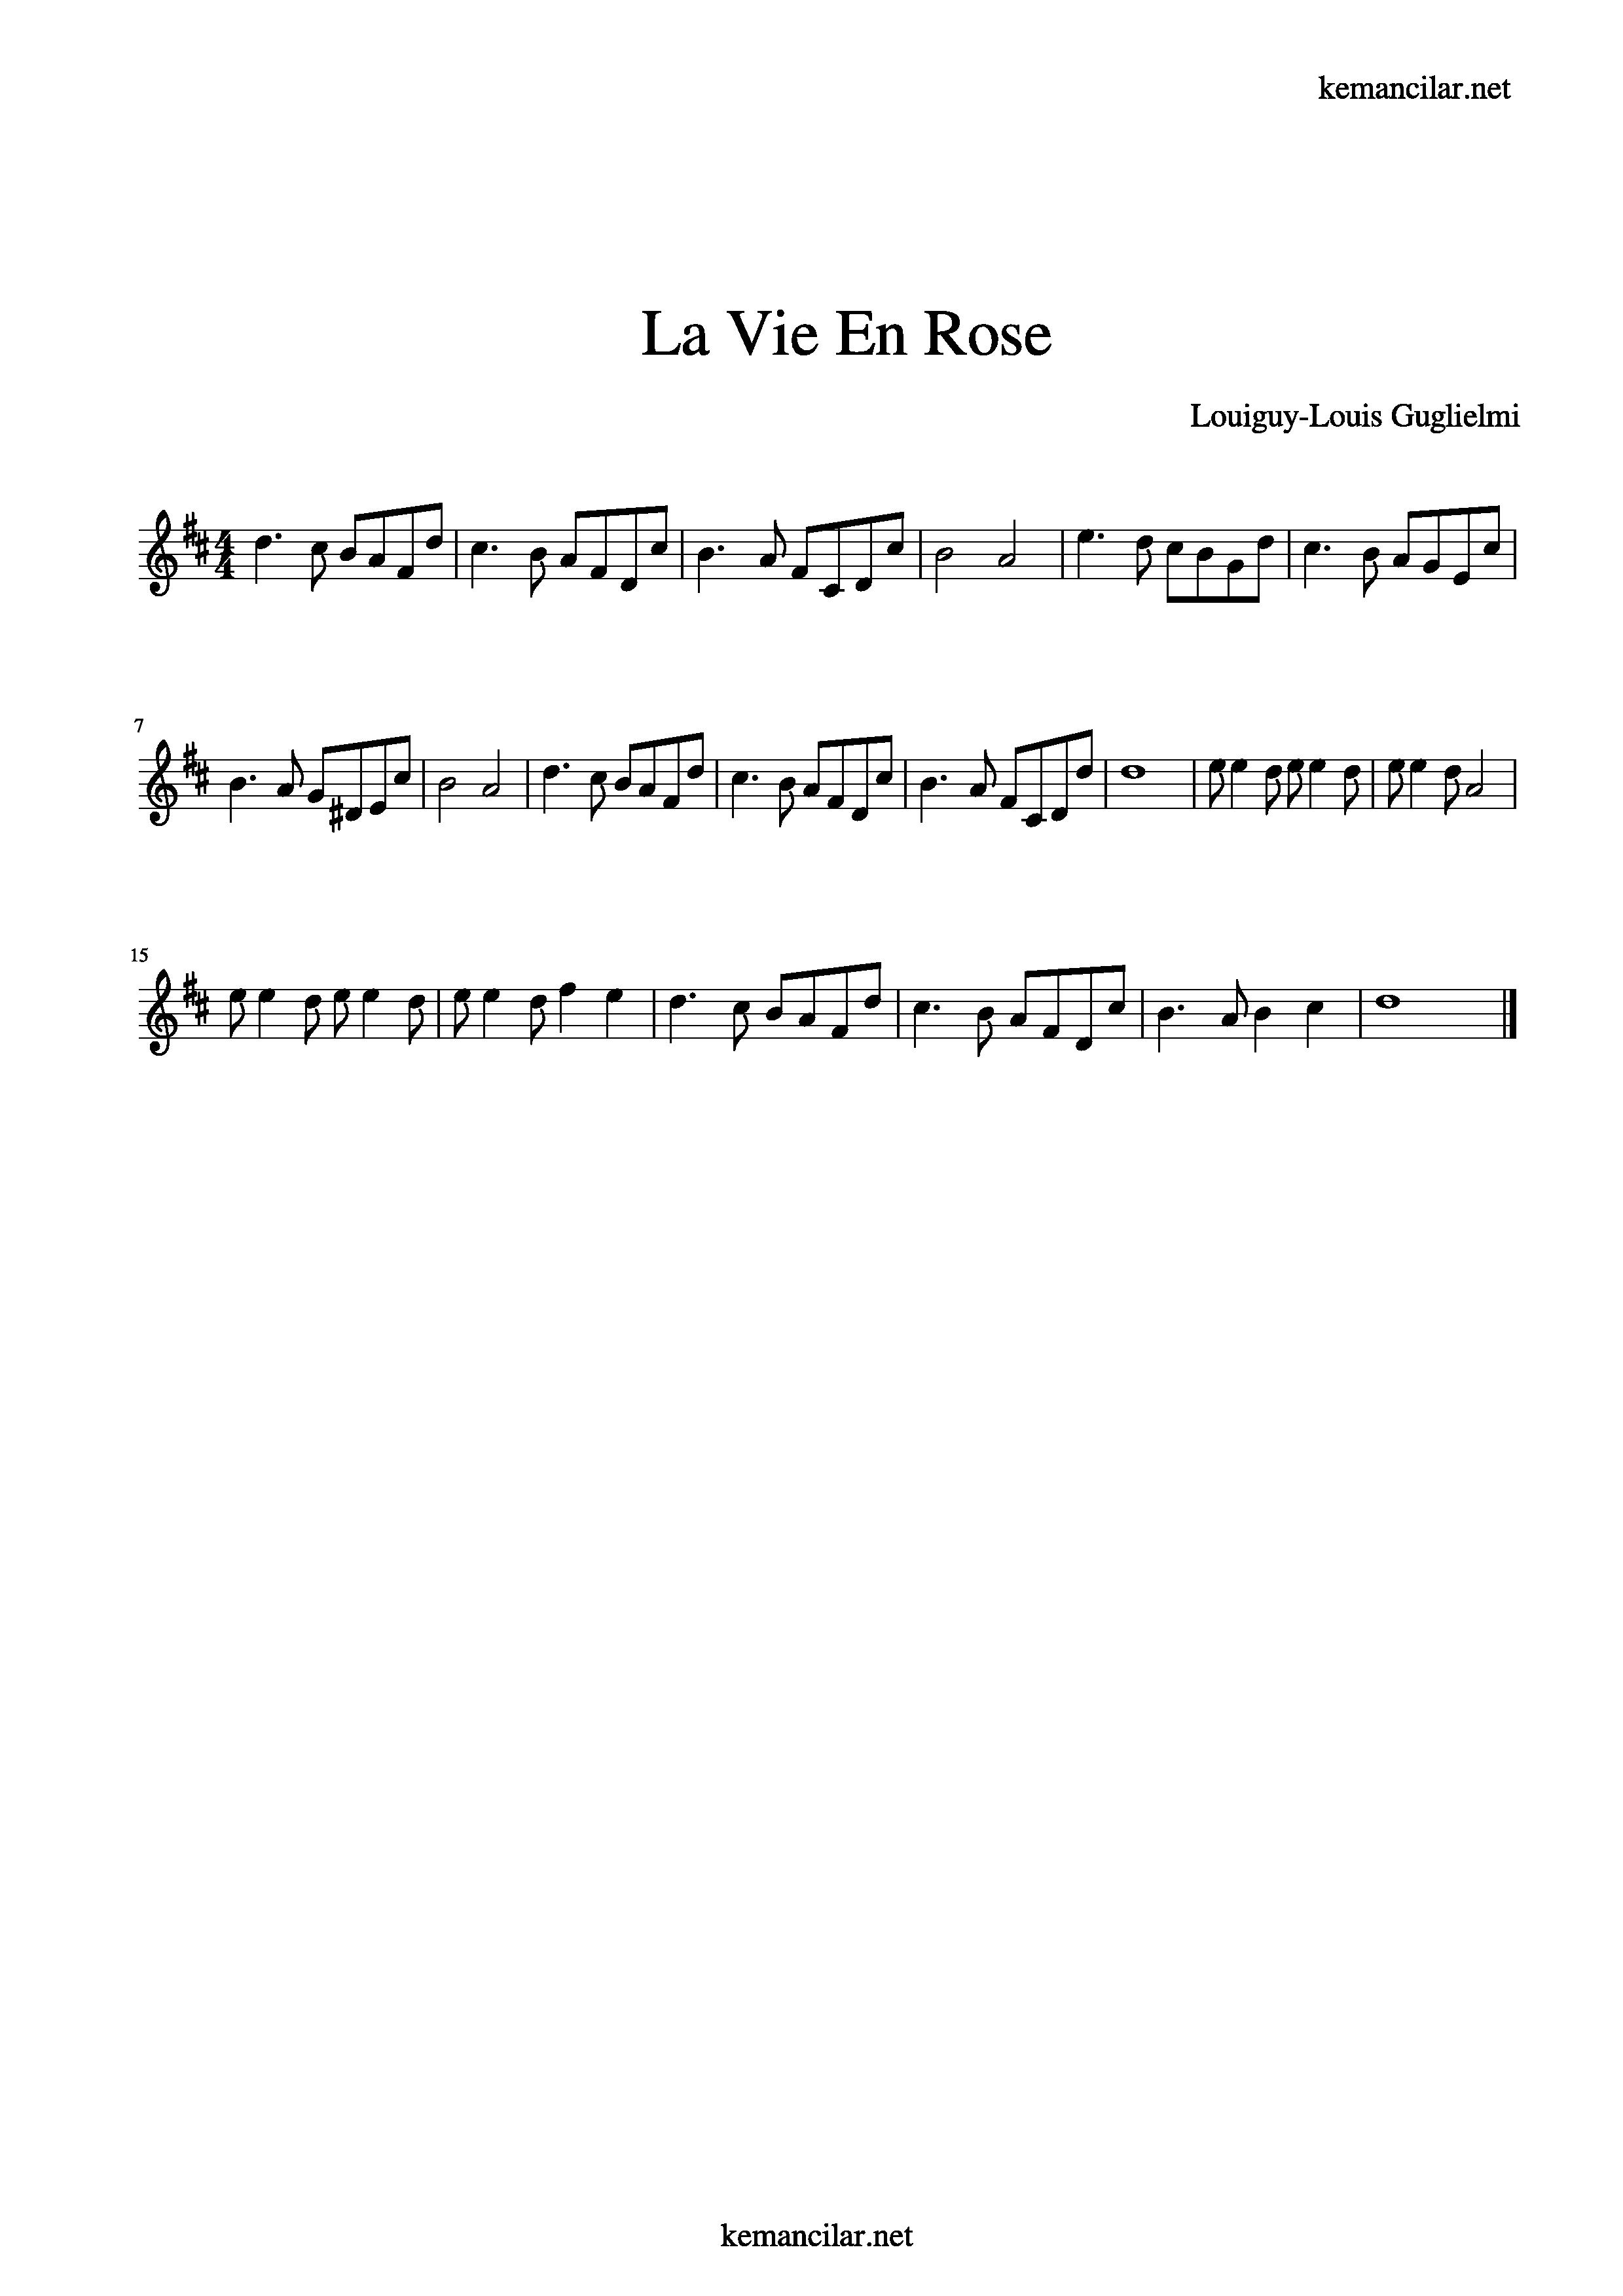 La Vie En Rose Violin Sheet Music - Free Sheet Music